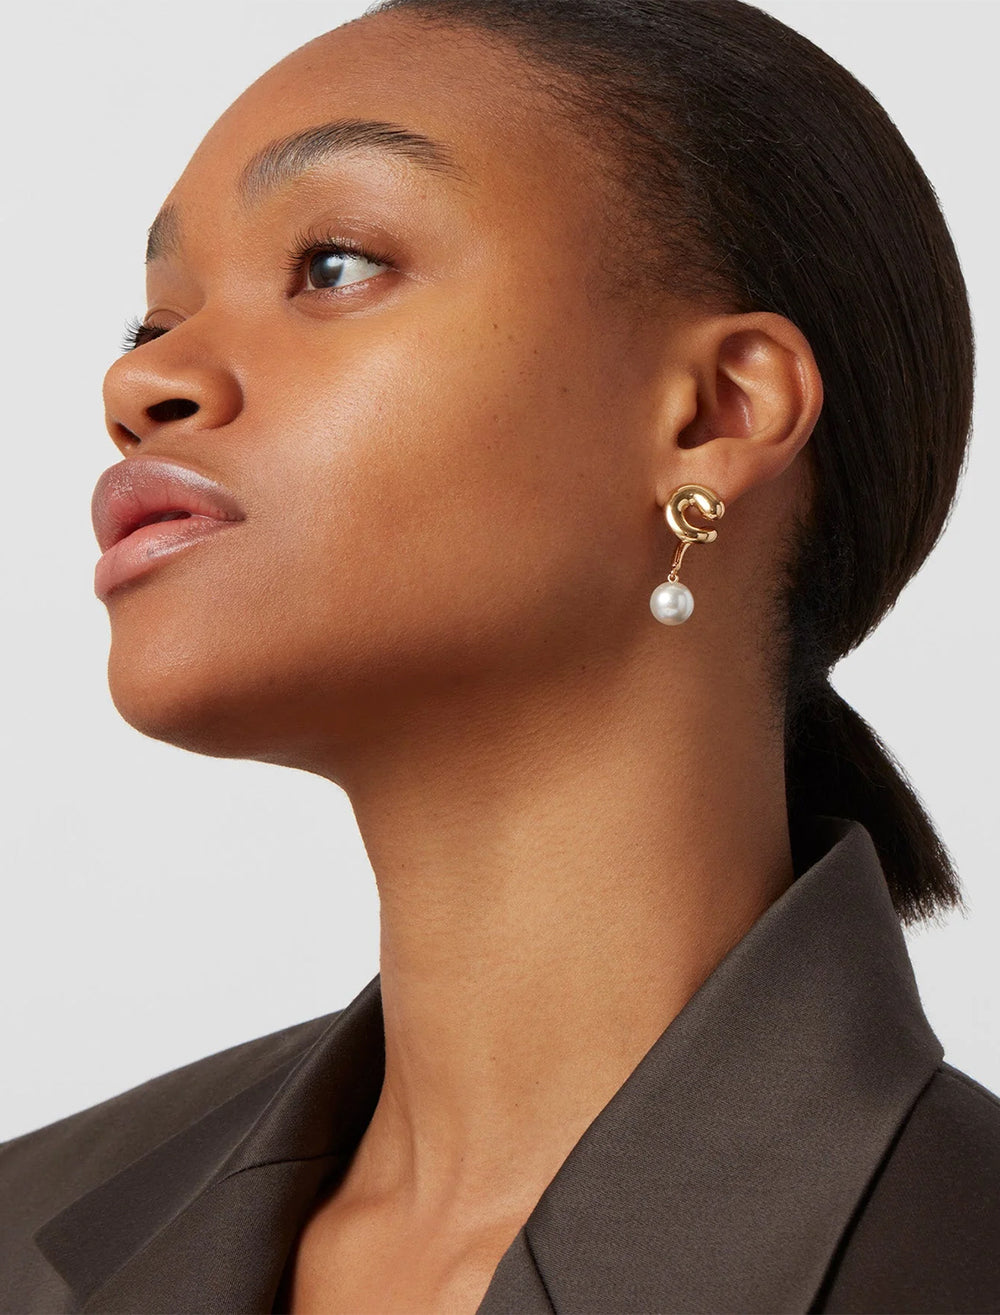 Model wearing Jenny Bird's daphne earring in gold.